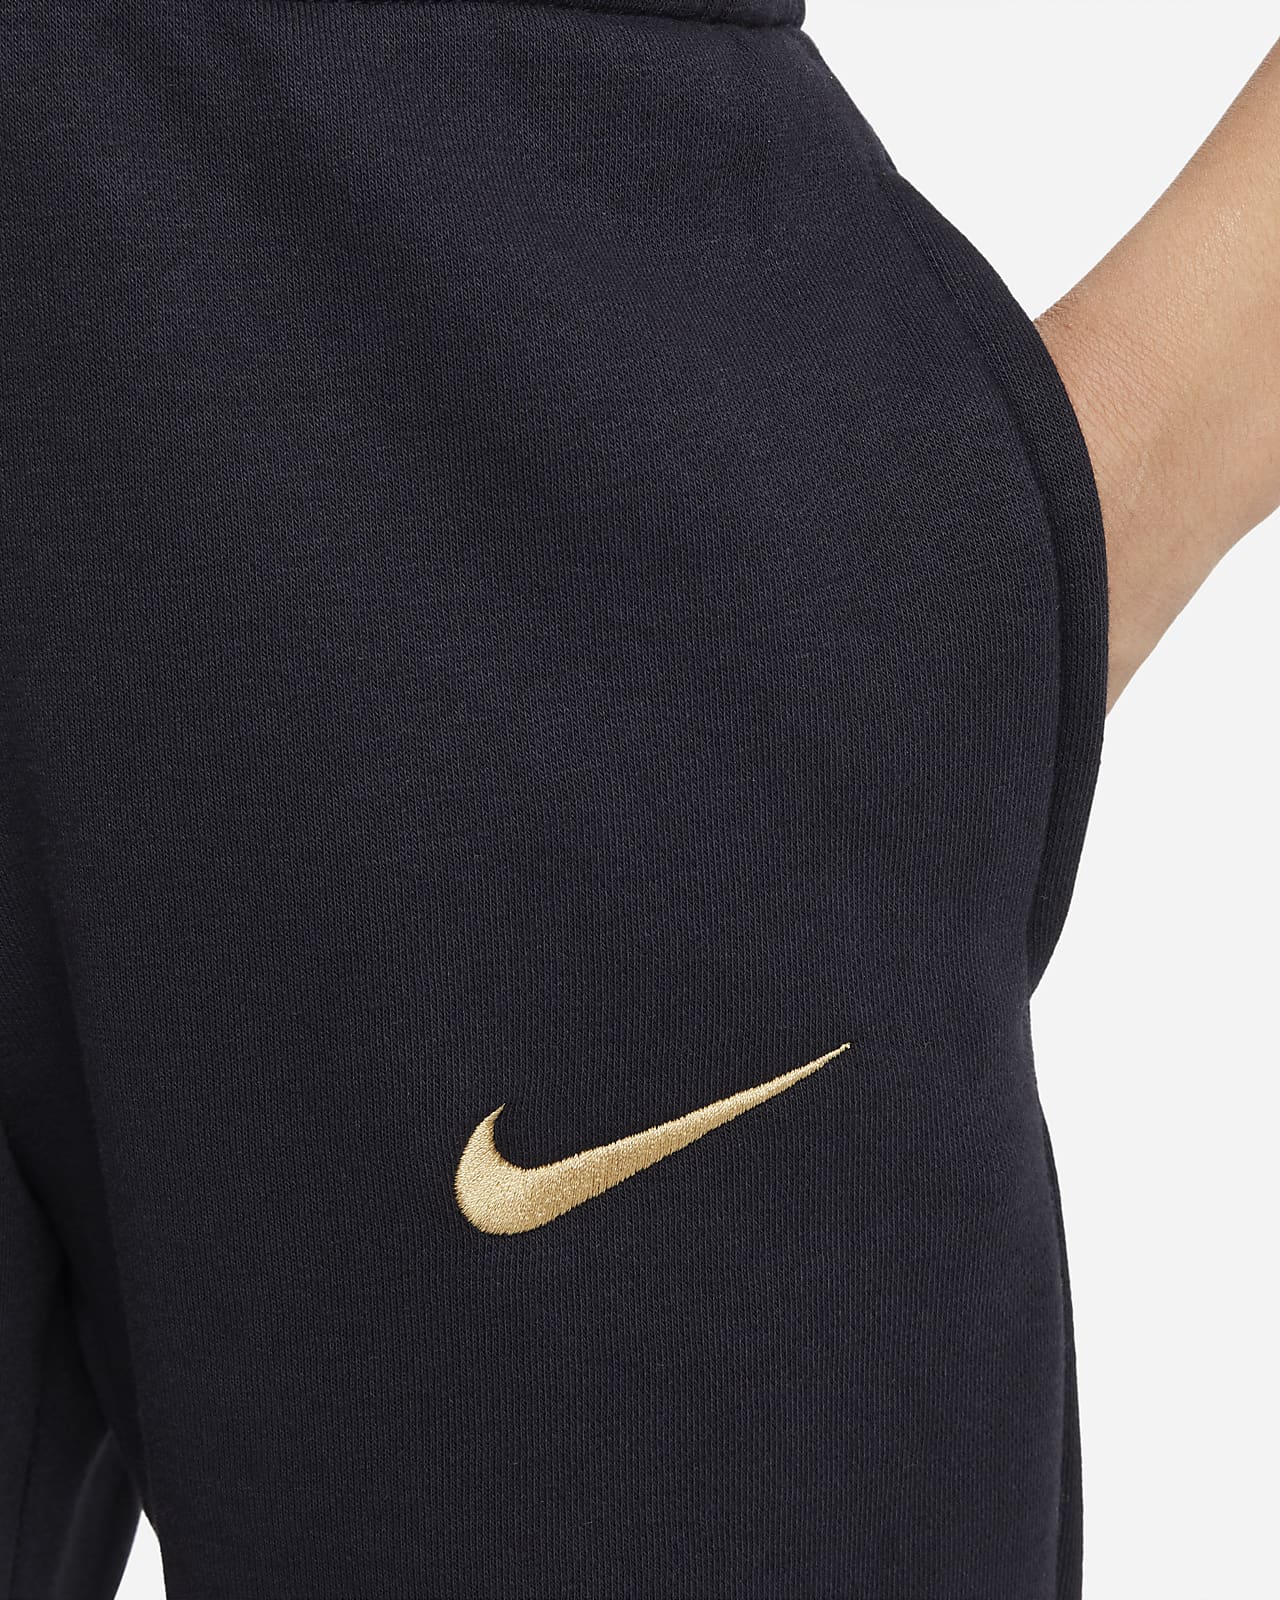 Nike + Fleece Pants